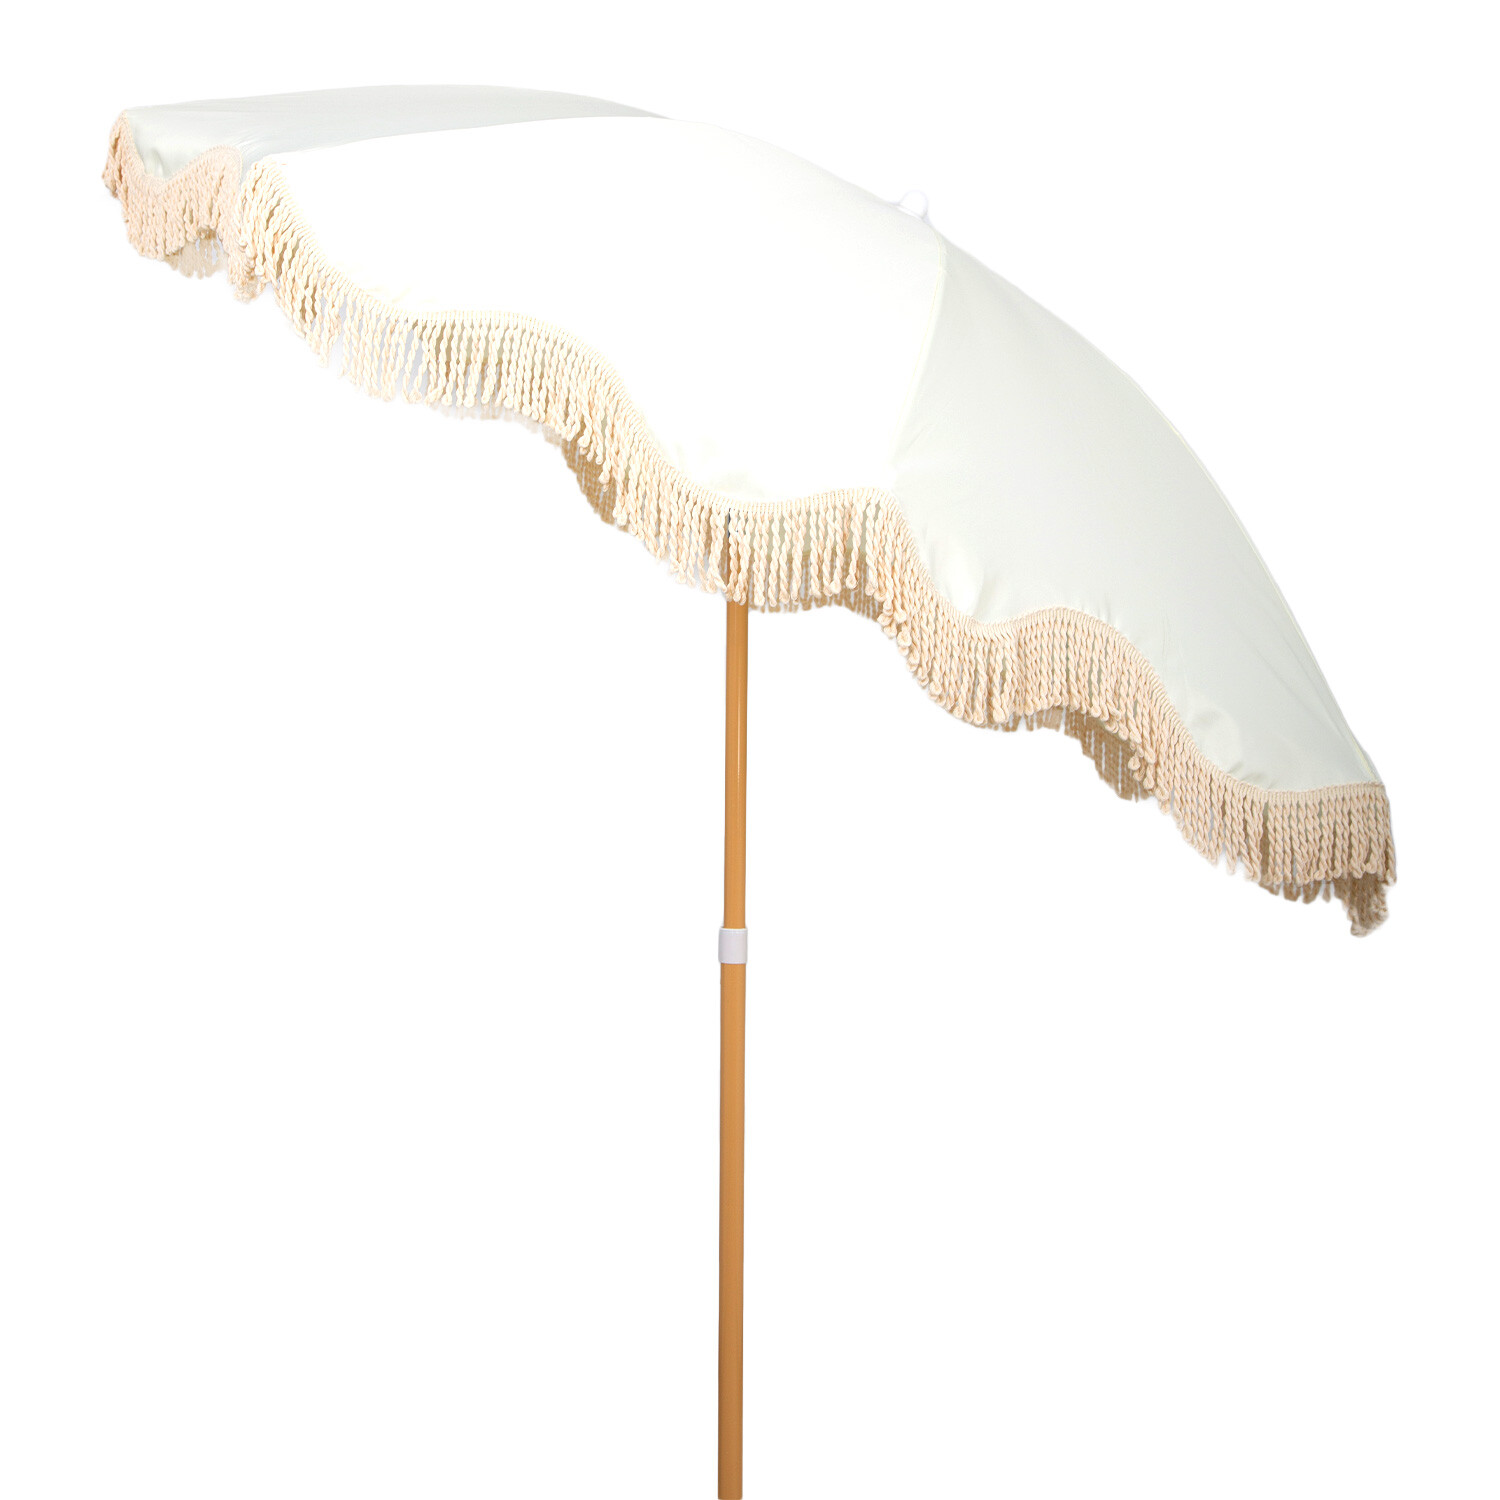 Cream Beach Umbrella with Tassels 1.7m Image 3